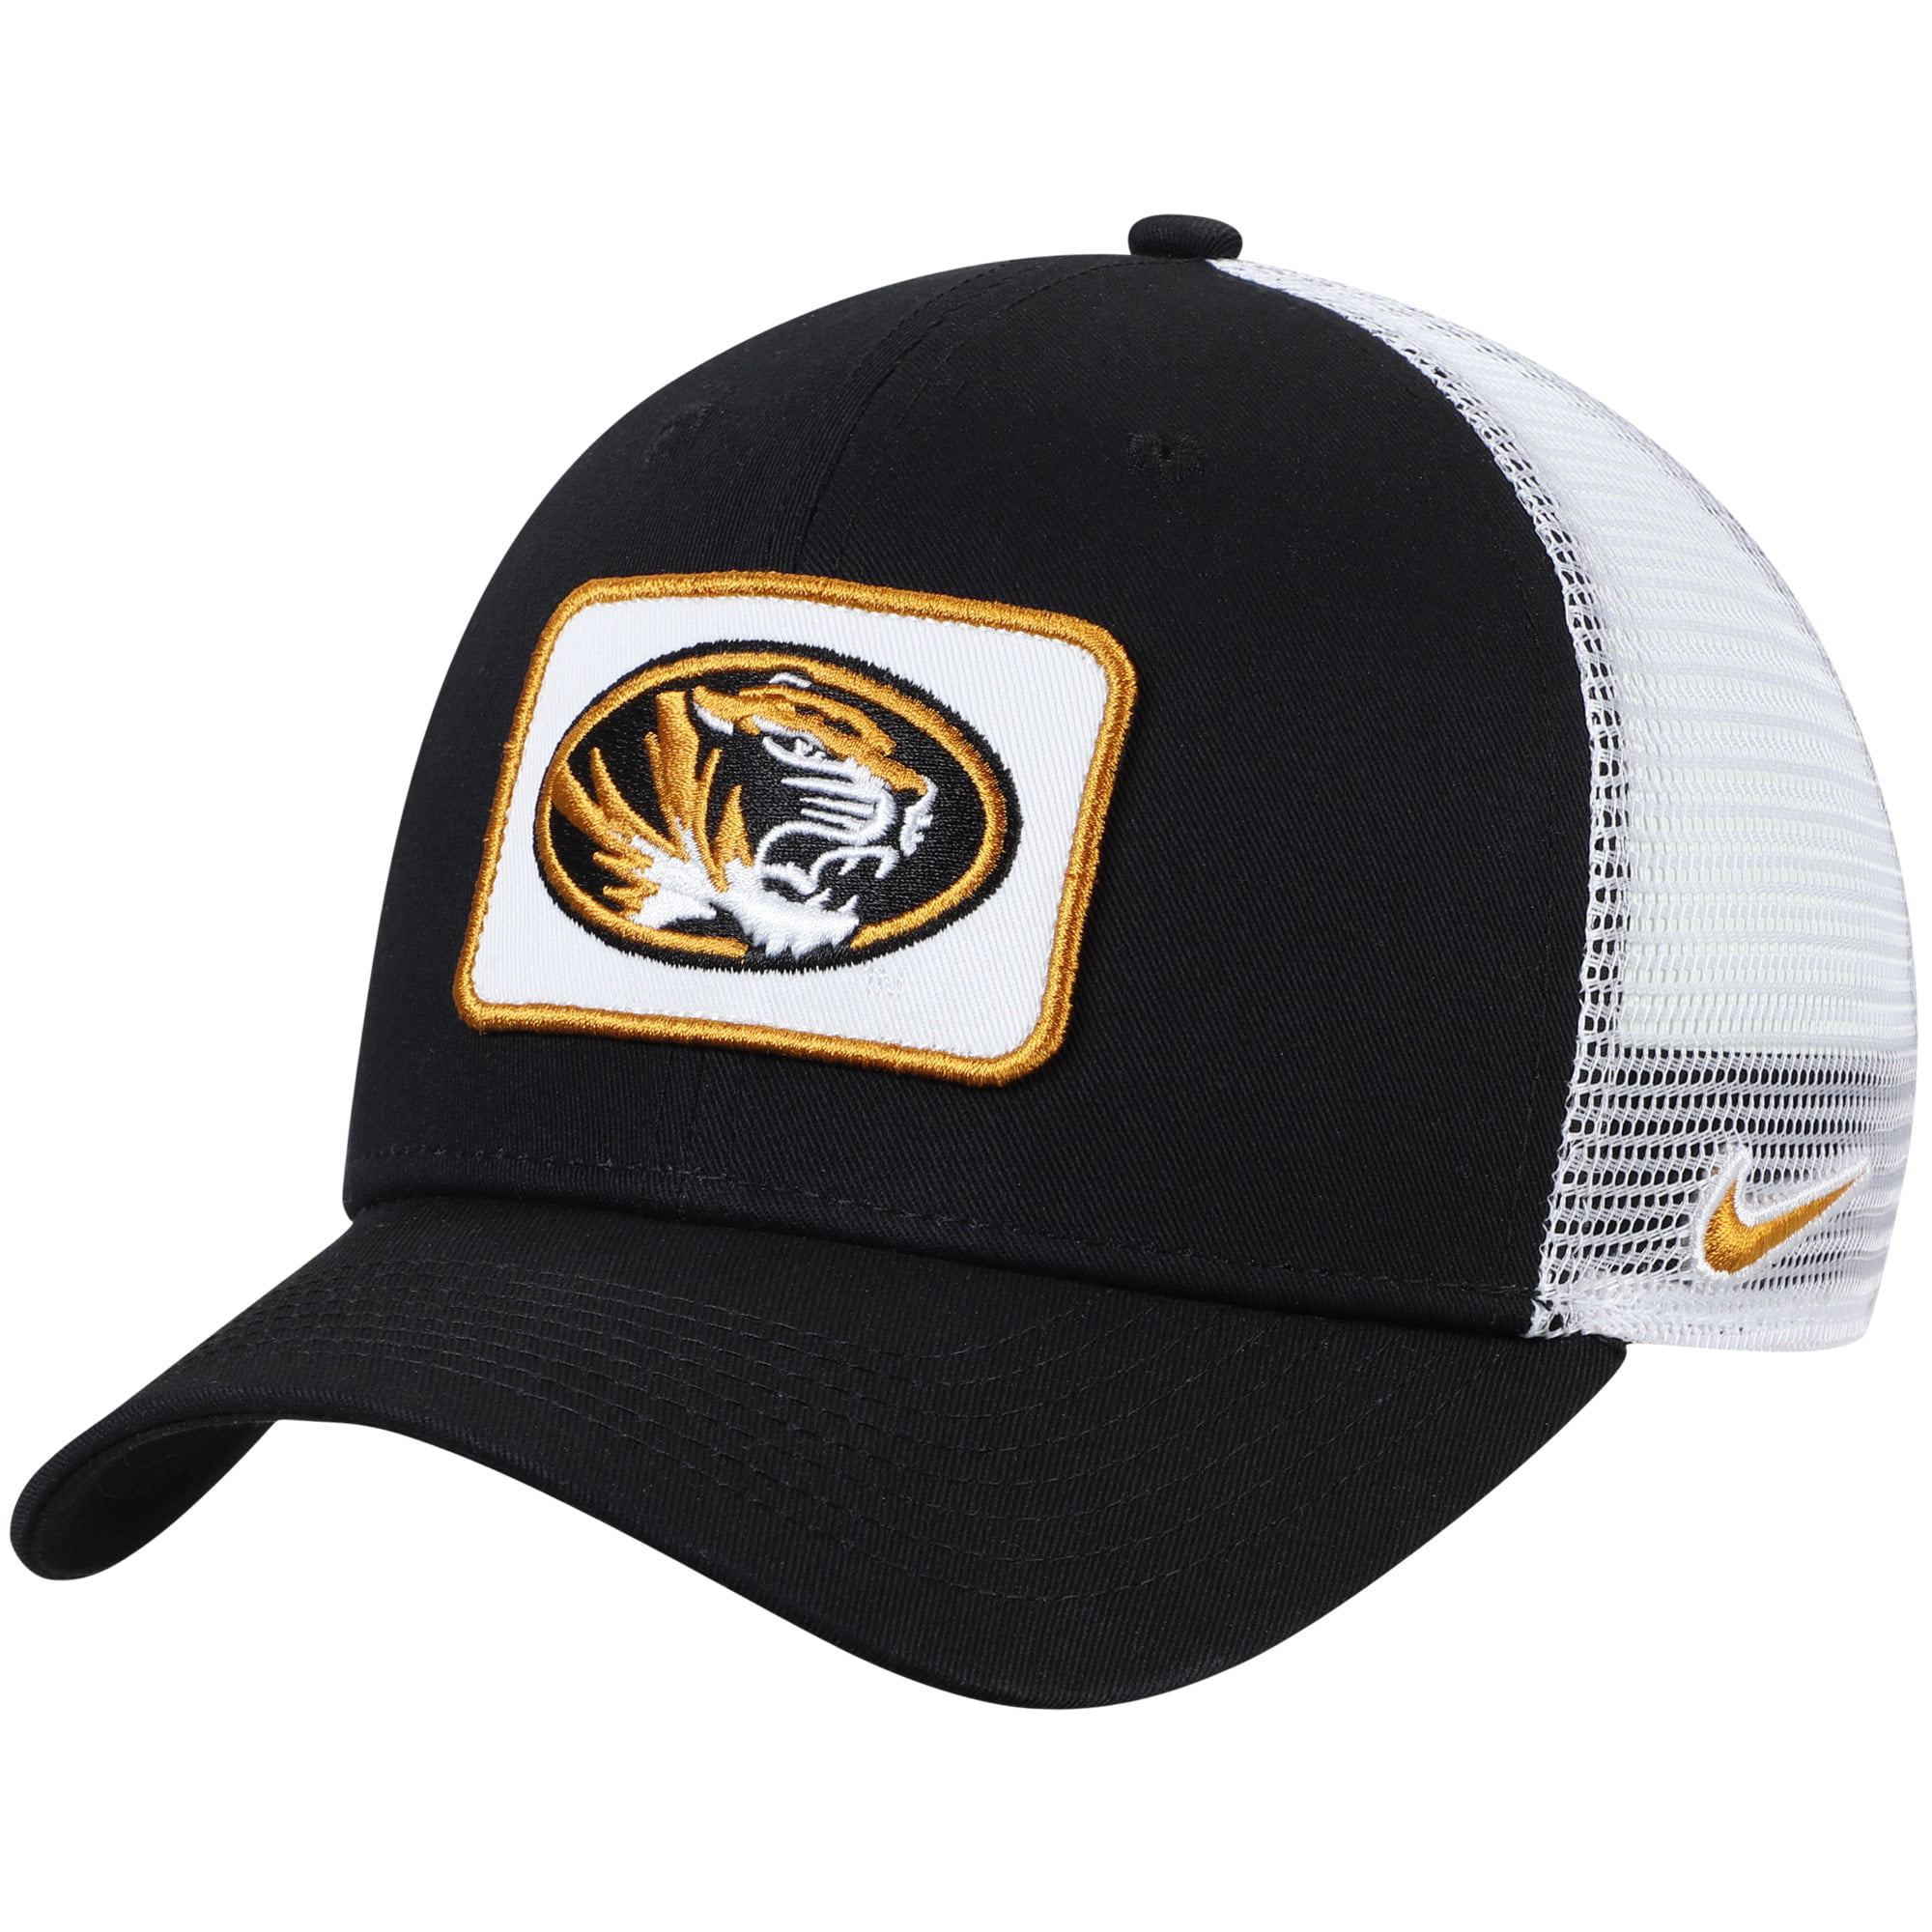 Tiger hat Trucker Hat Mesh Hat  Snap Back Hat black